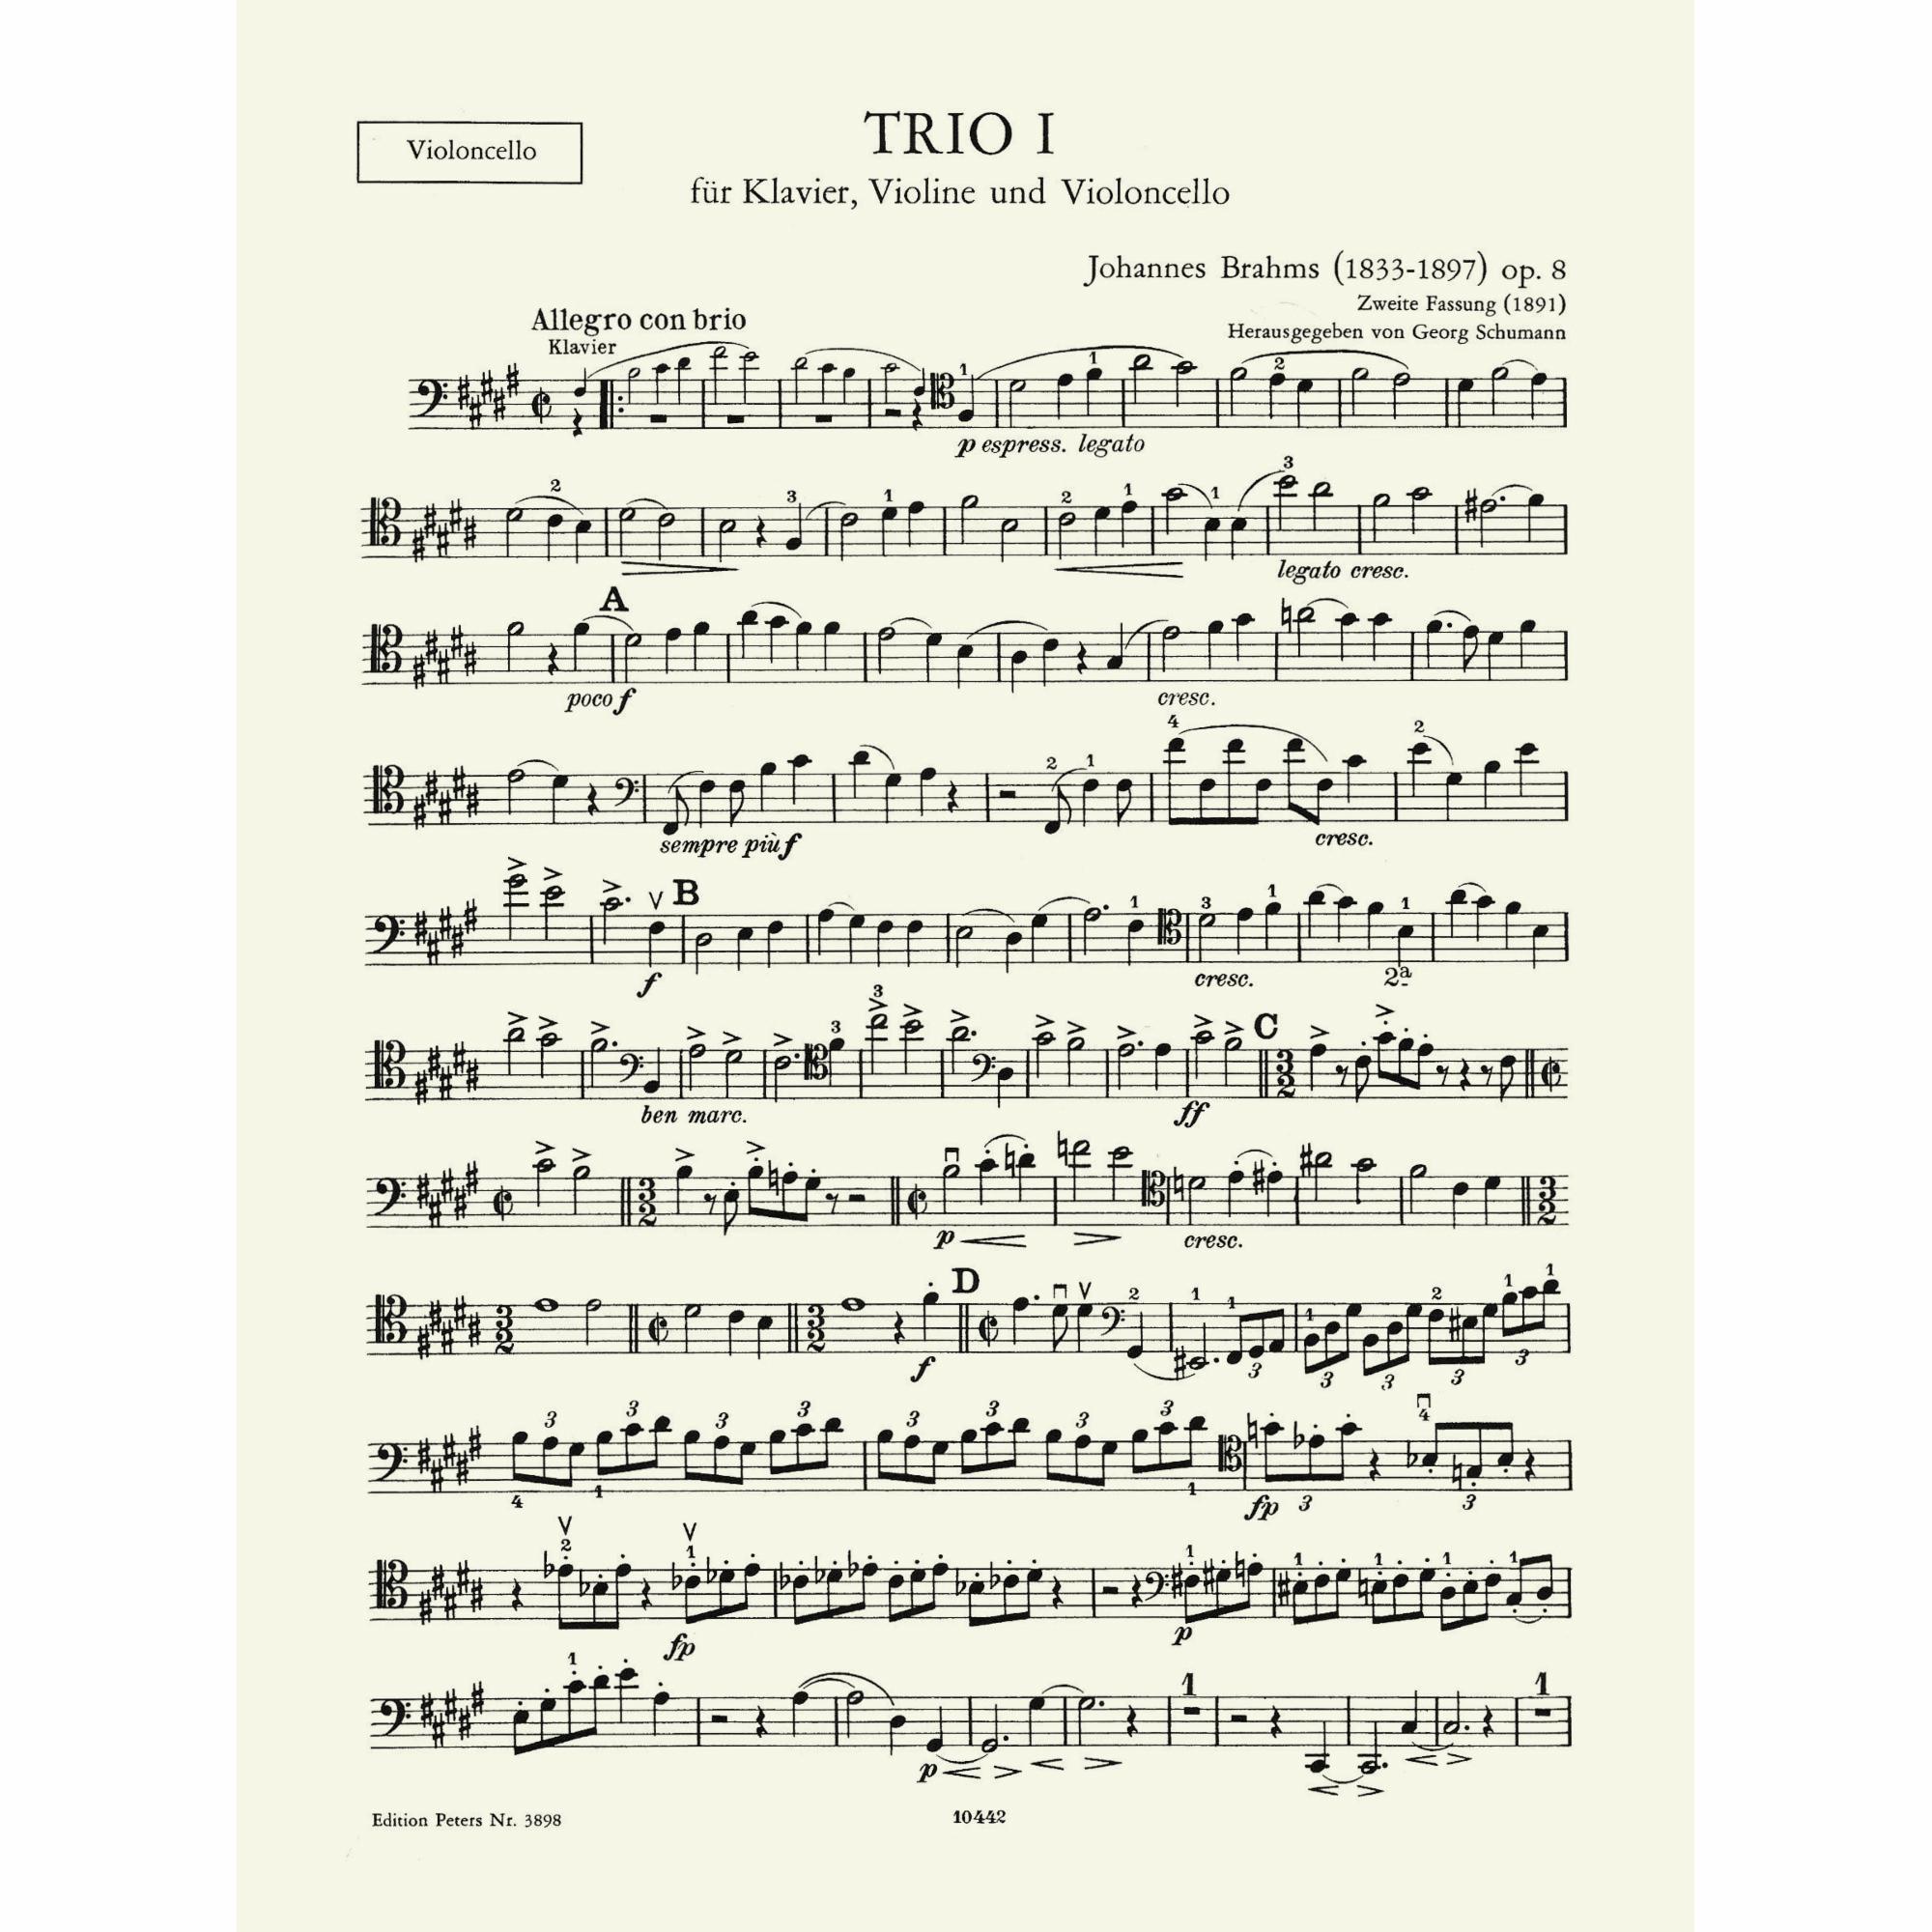 Sample: Cello (Pg. 3)